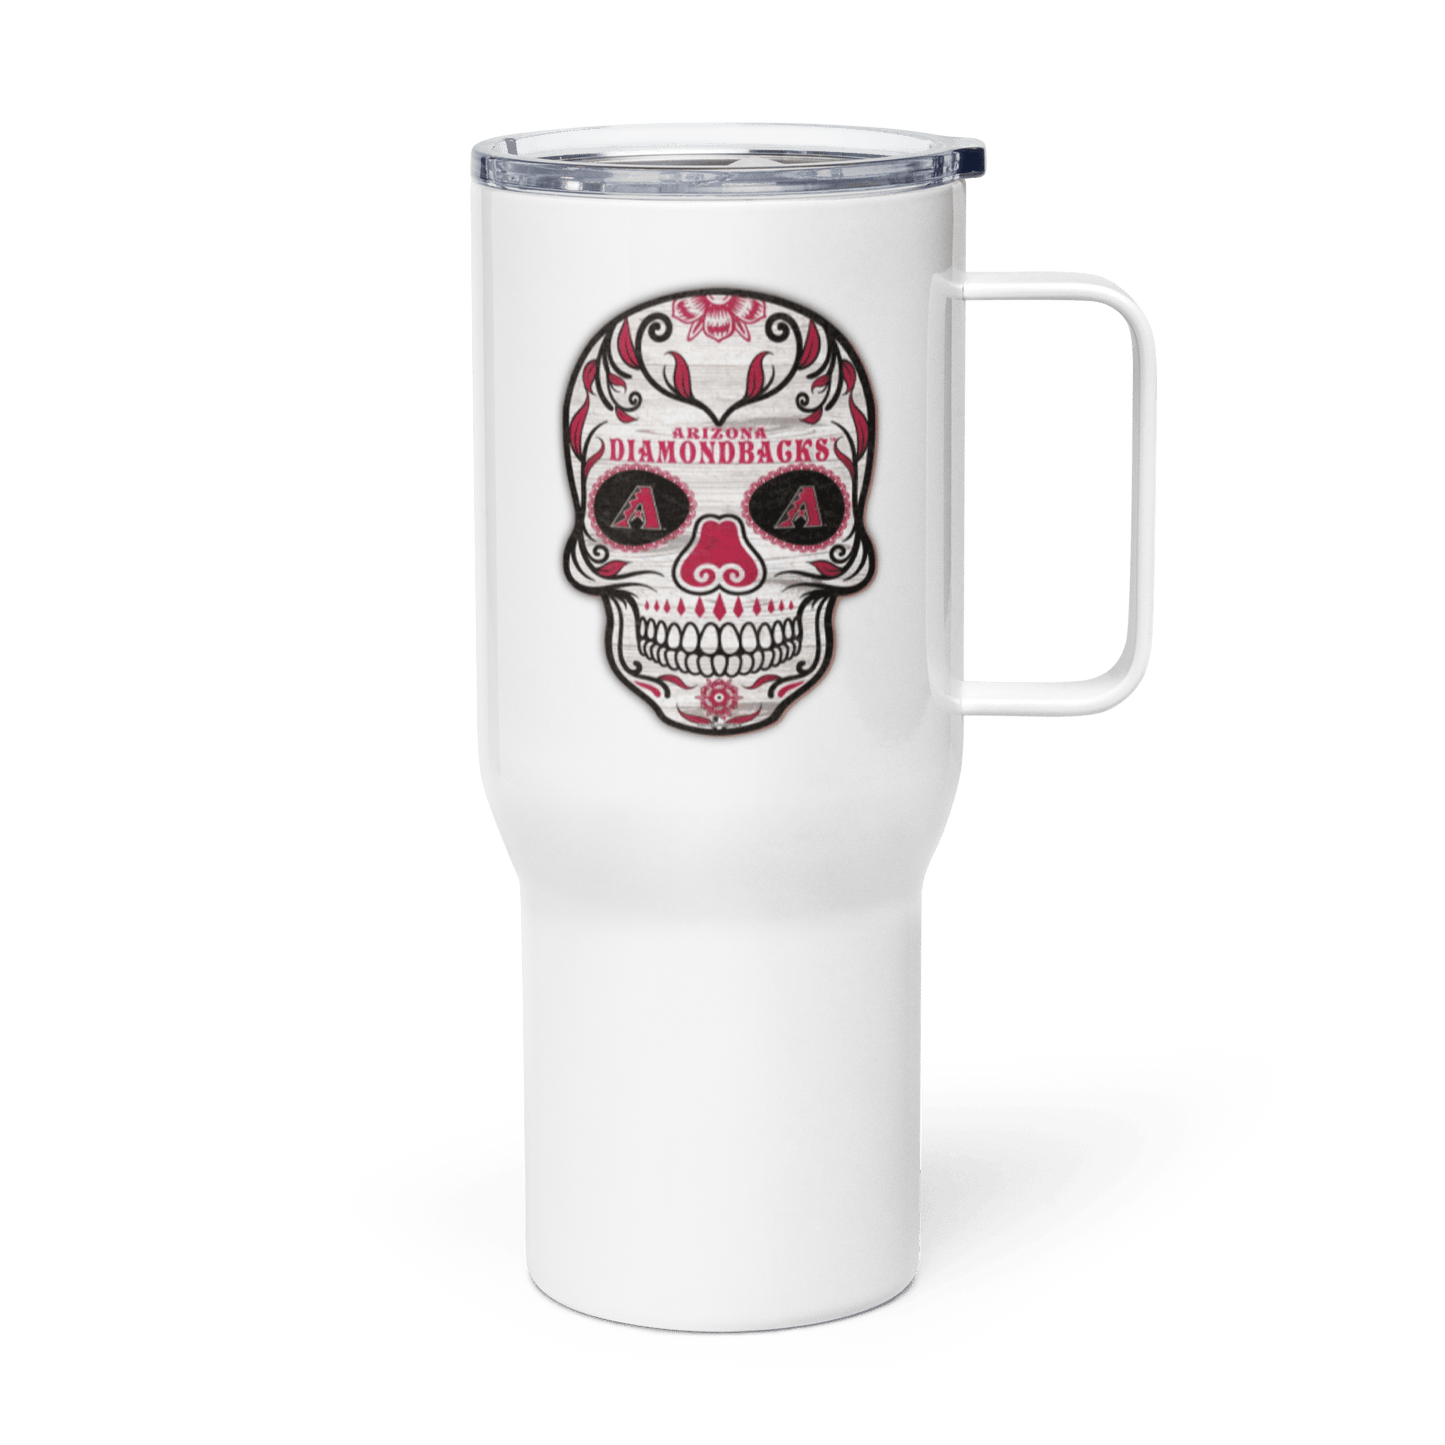 Arizona Diamondbacks Travel mug with a handle